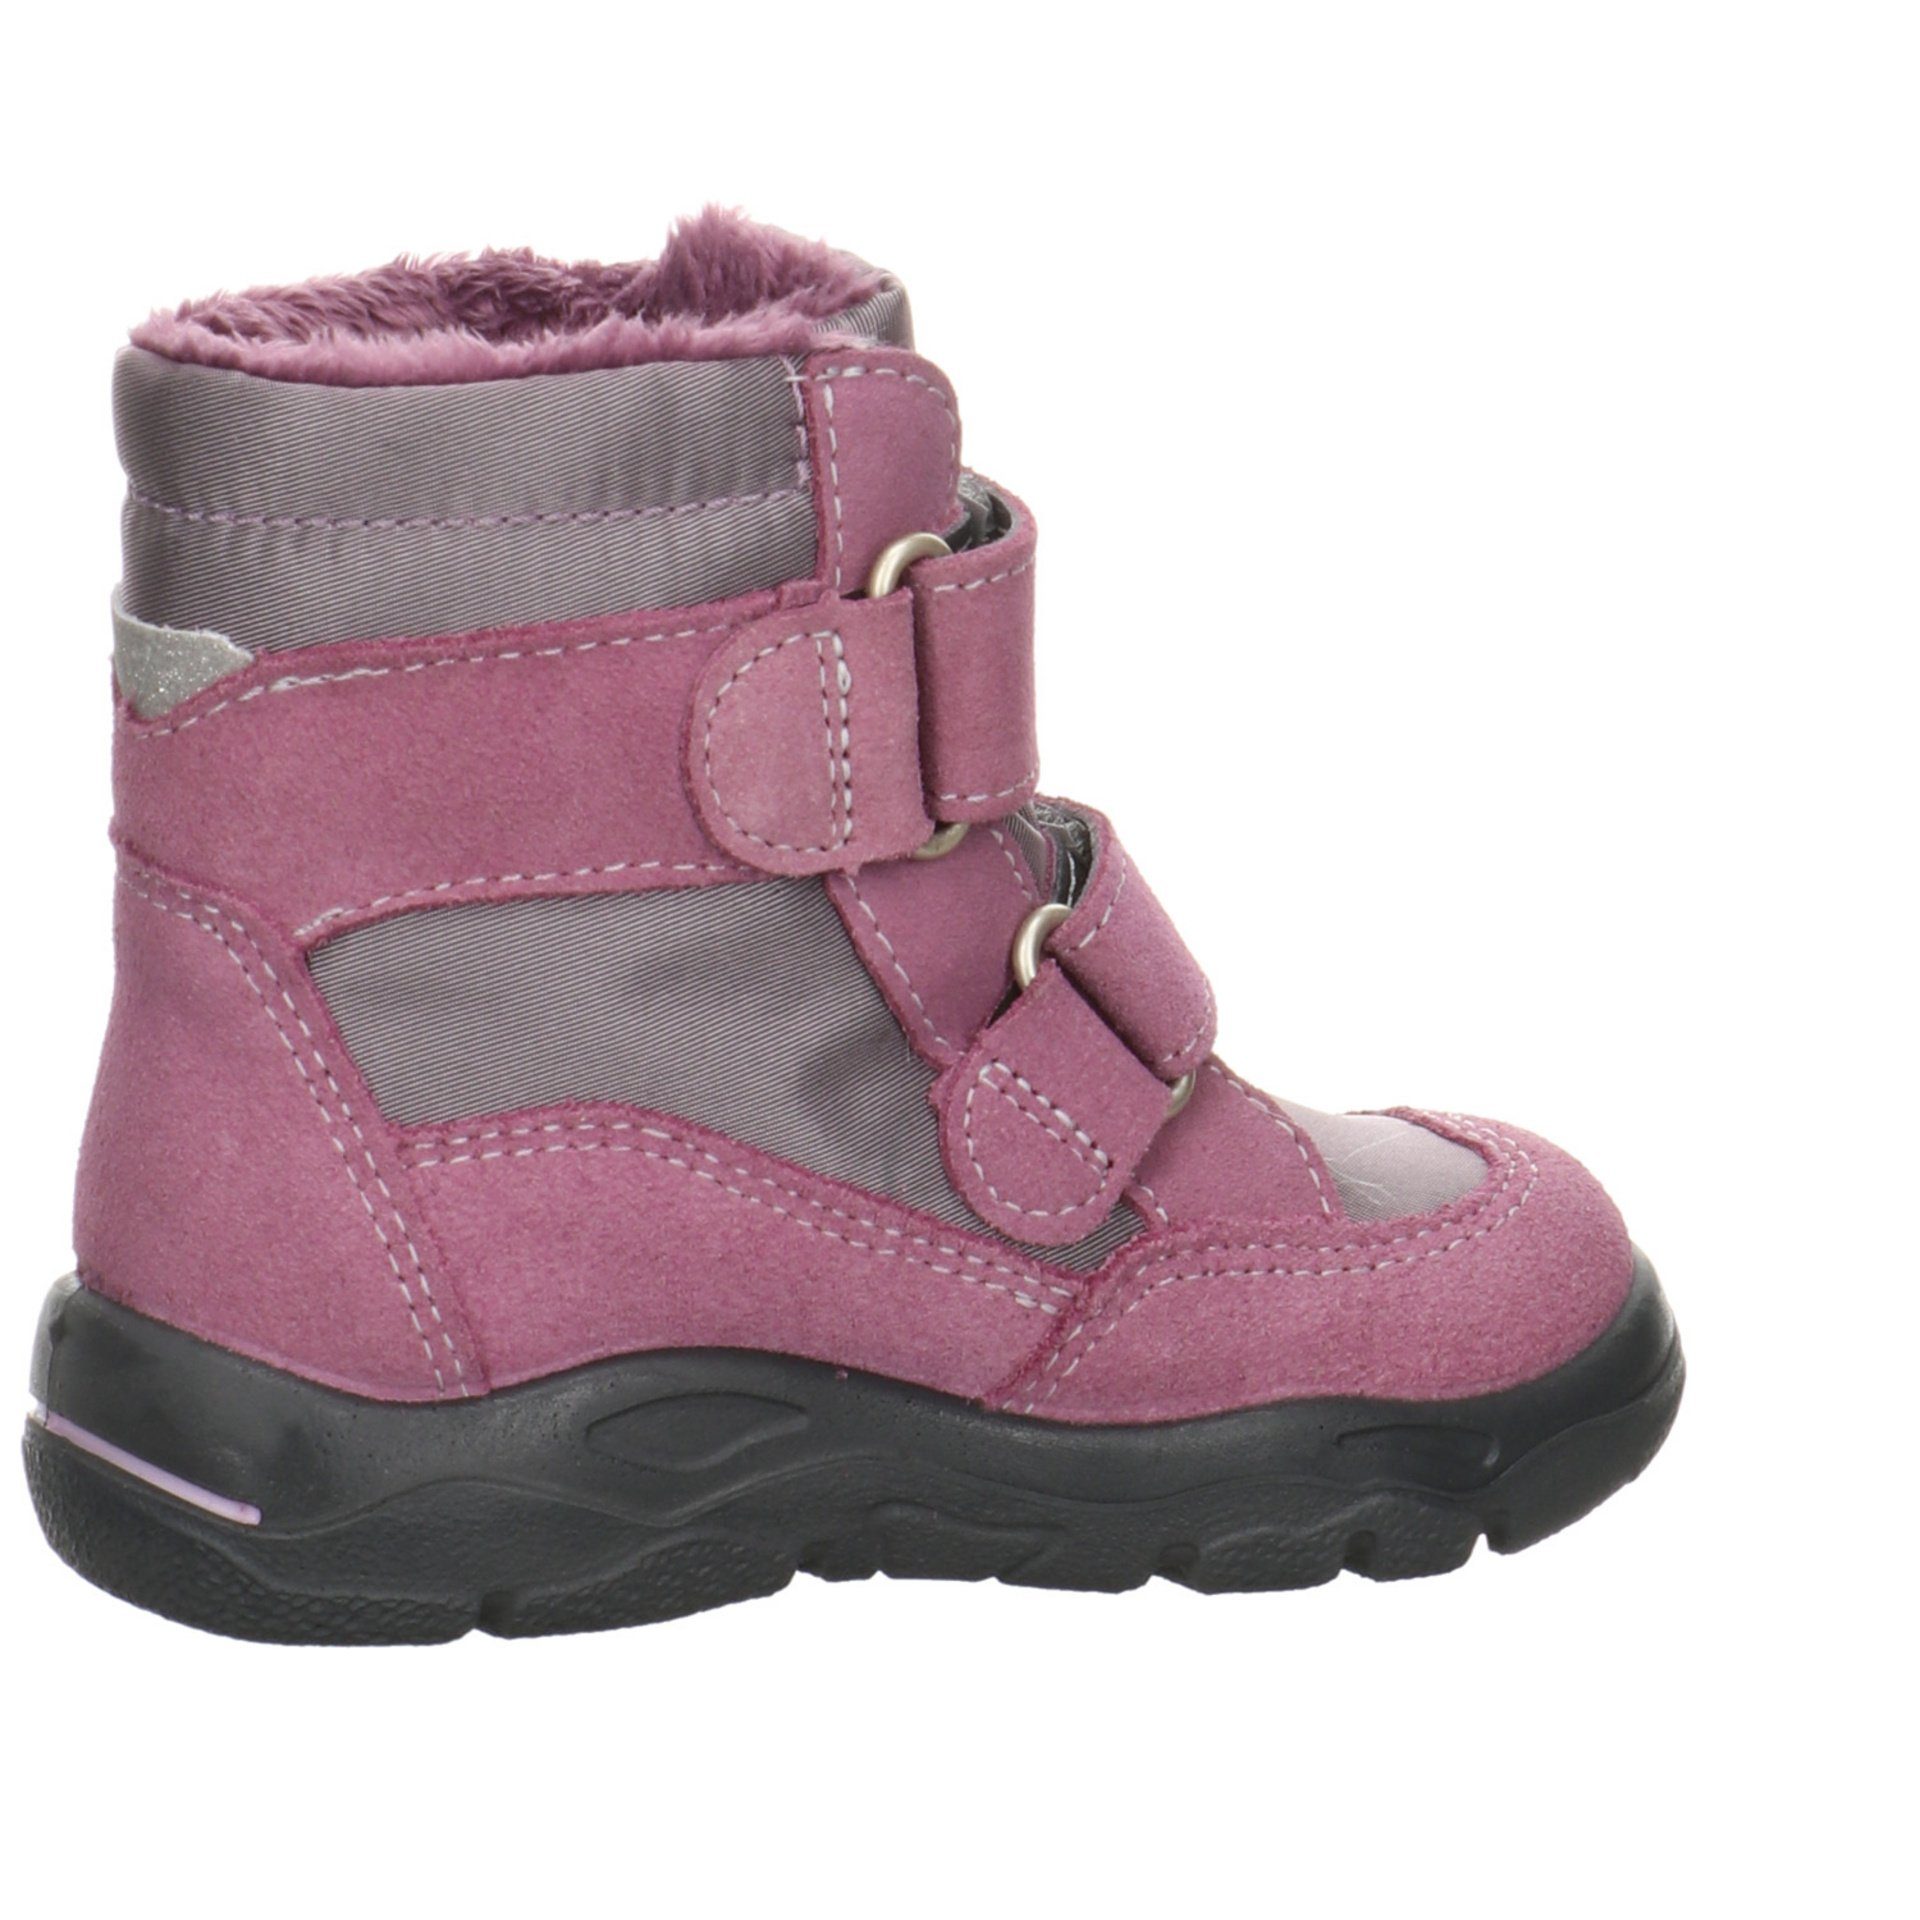 Krabbelschuhe Lauflernschuh Baby Hildie purple Leder-/Textilkombination Boots Ricosta (320) Lauflernschuhe